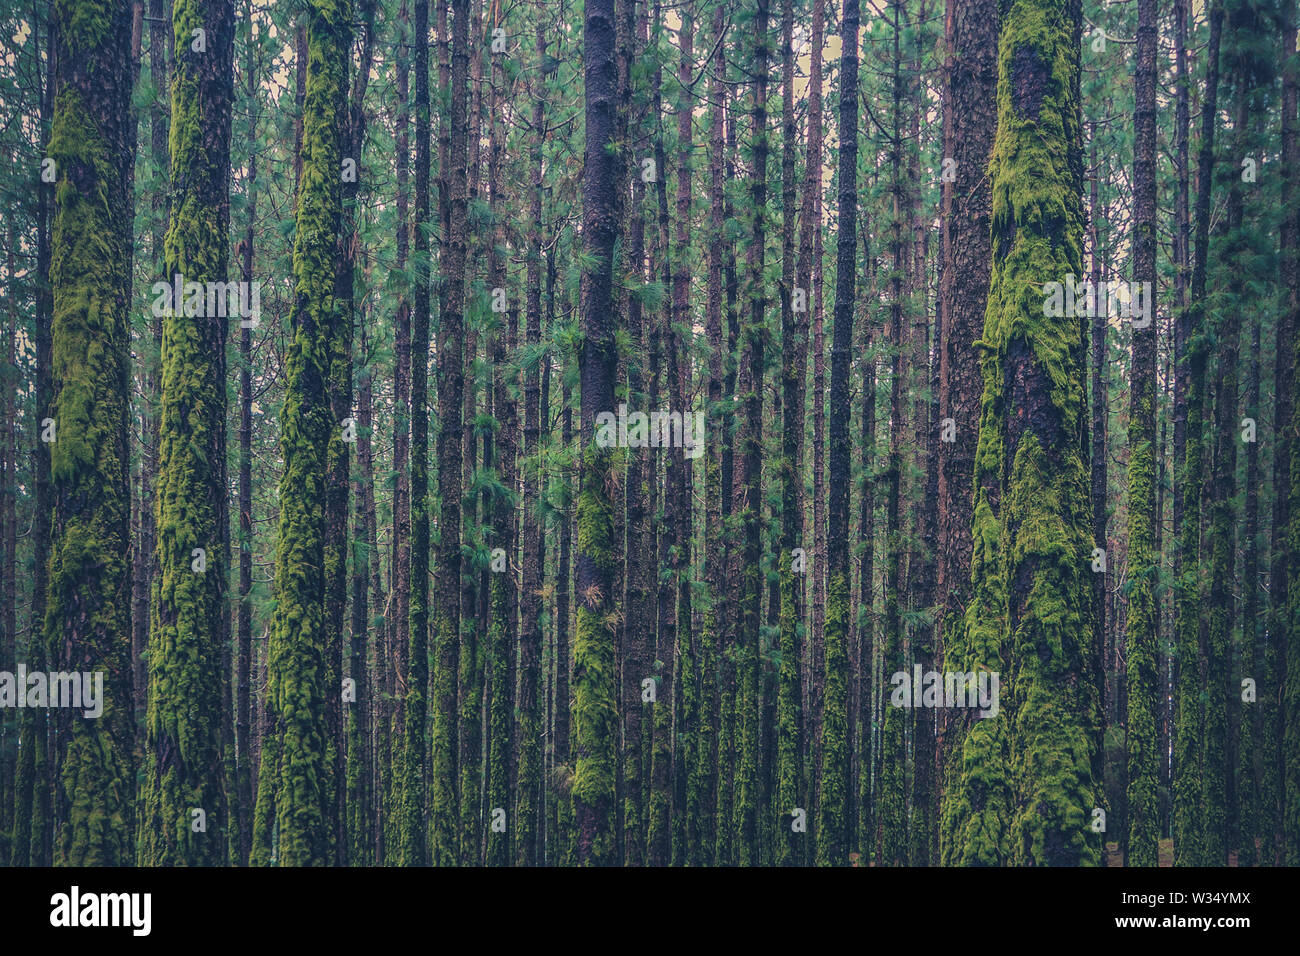 Los árboles dentro del bosque de coníferas cubierto de musgo Foto de stock